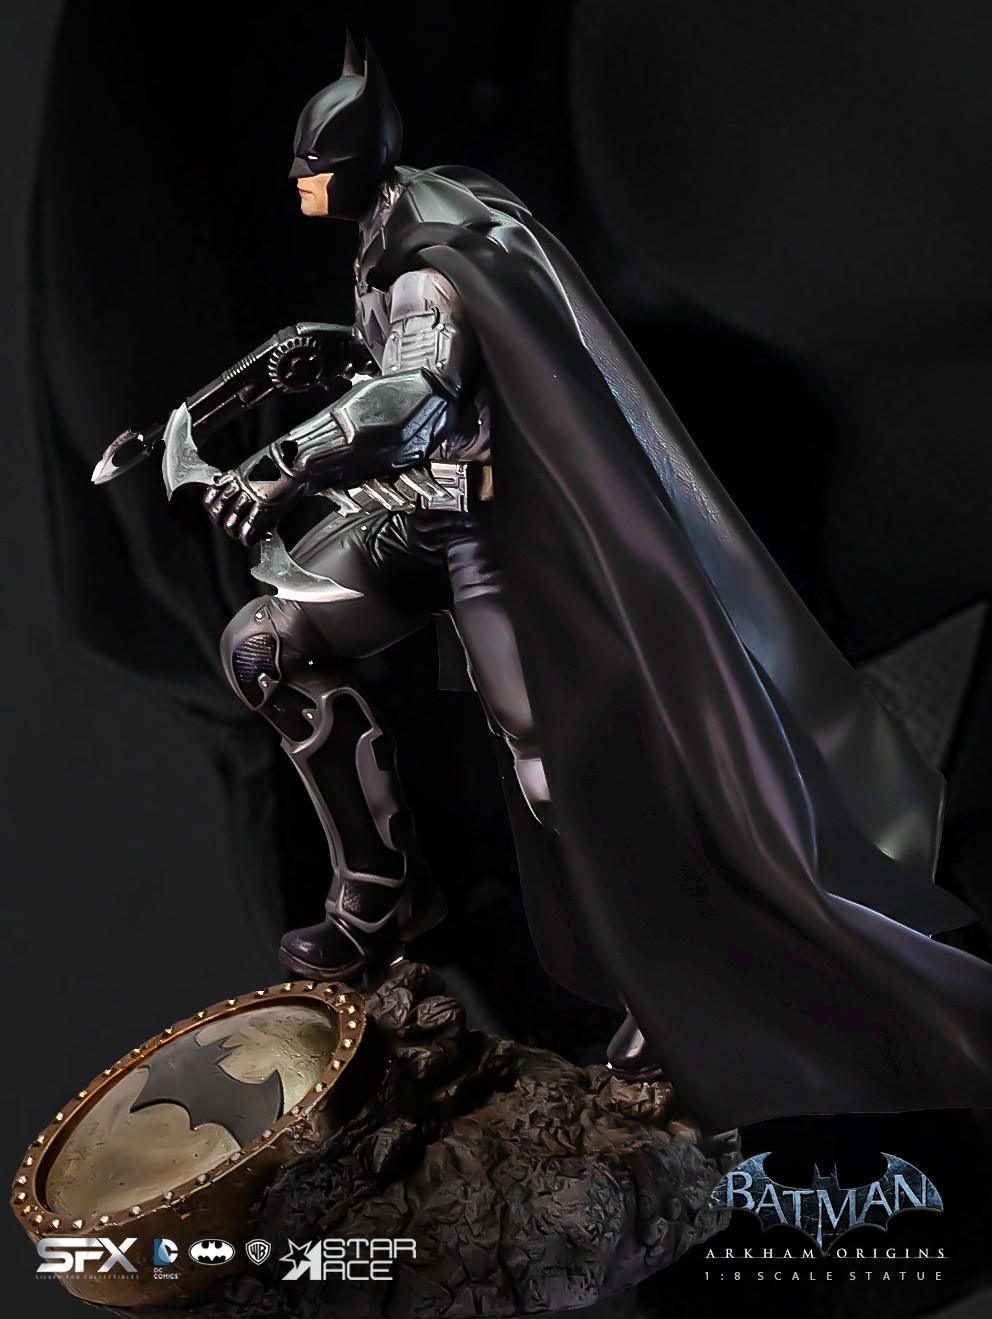 Batman Arkham Origins 2.0 Deluxe (Prototype Shown) View 6